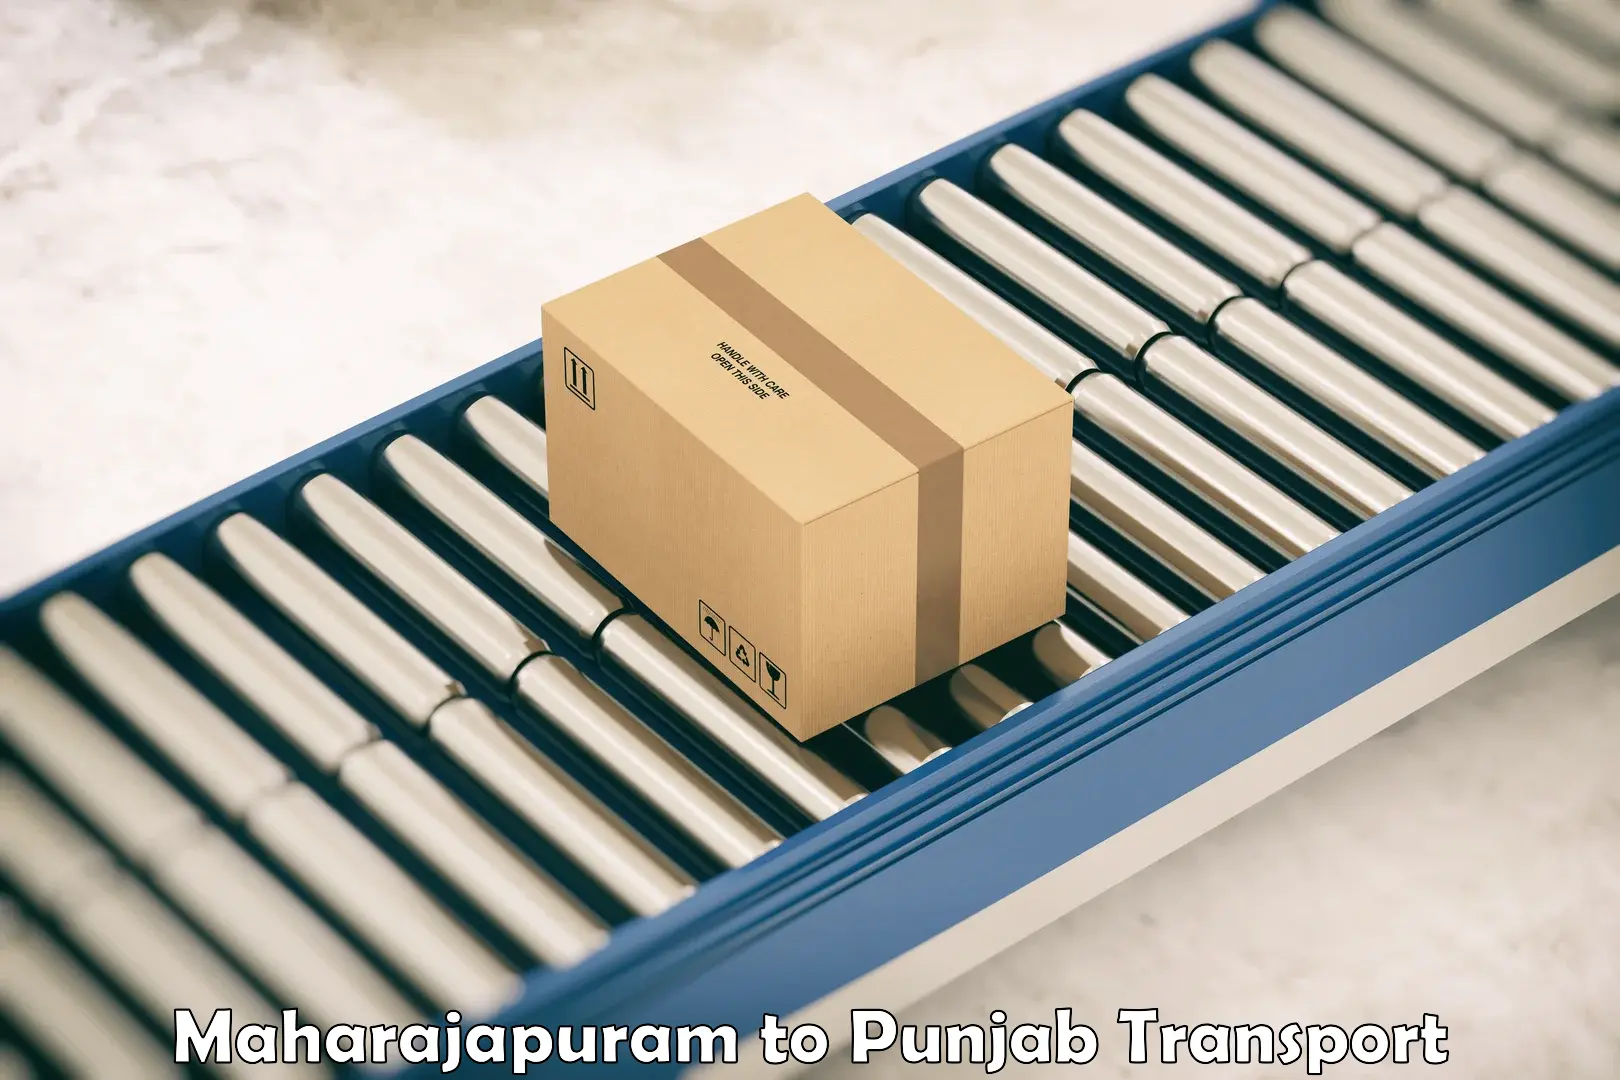 Furniture transport service in Maharajapuram to Ropar